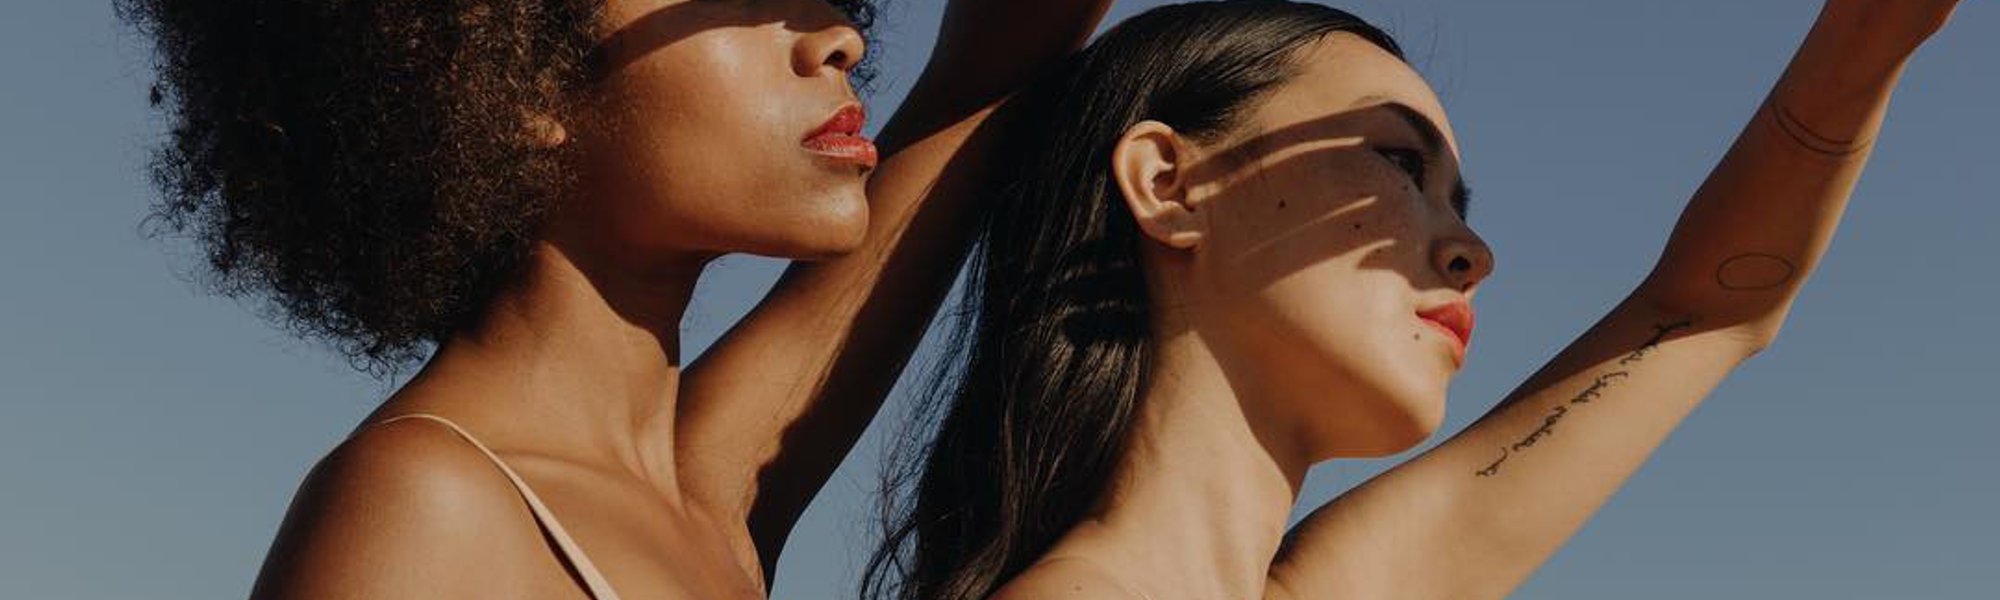 Cómo hidratar la piel en verano | L’Oréal Paris